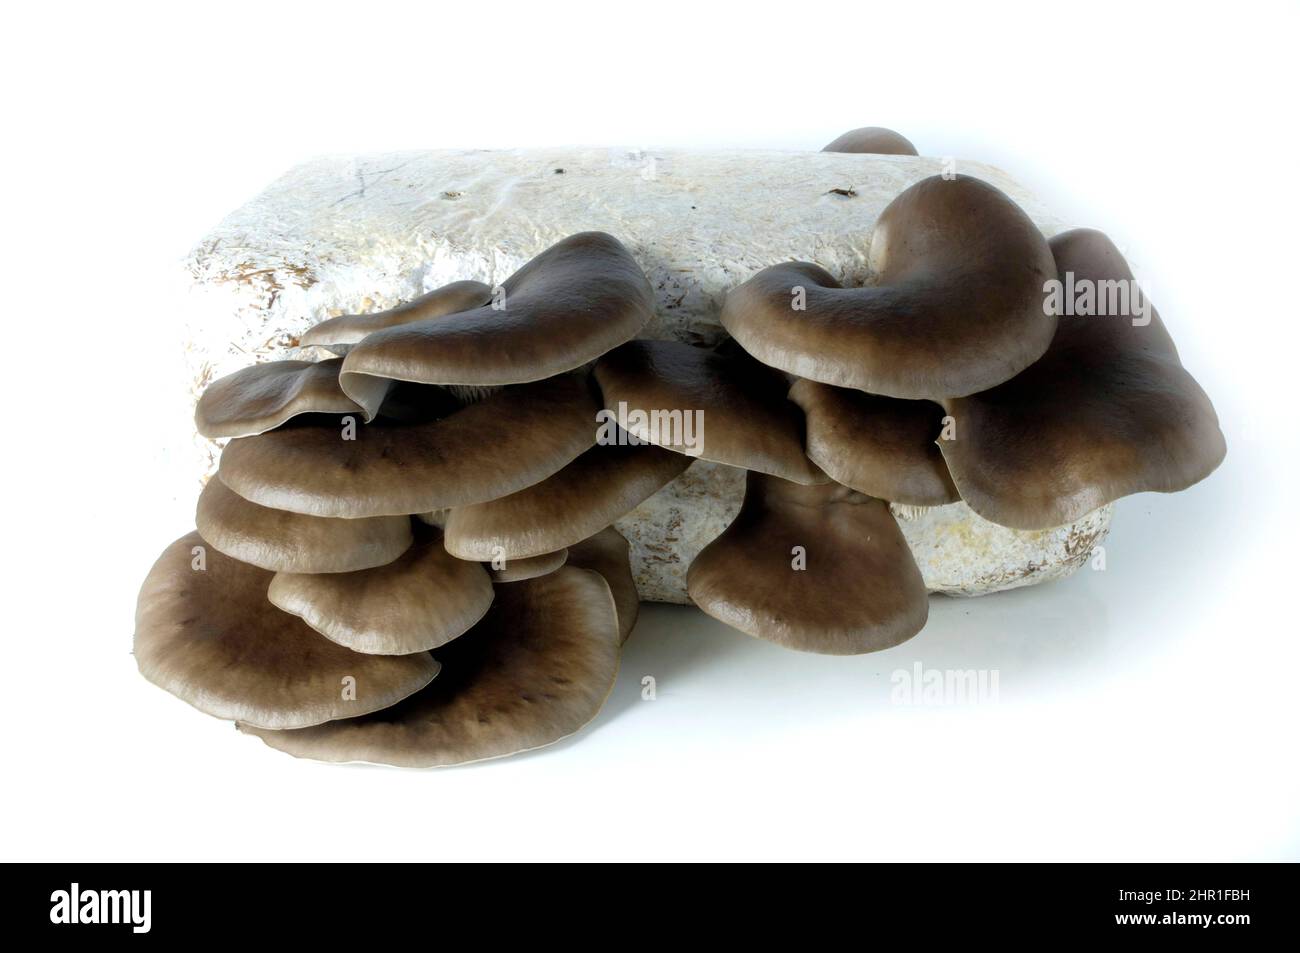 Oyster mushroom (Pleurotus ostreatus), mushroom cultivation on a substrate Stock Photo